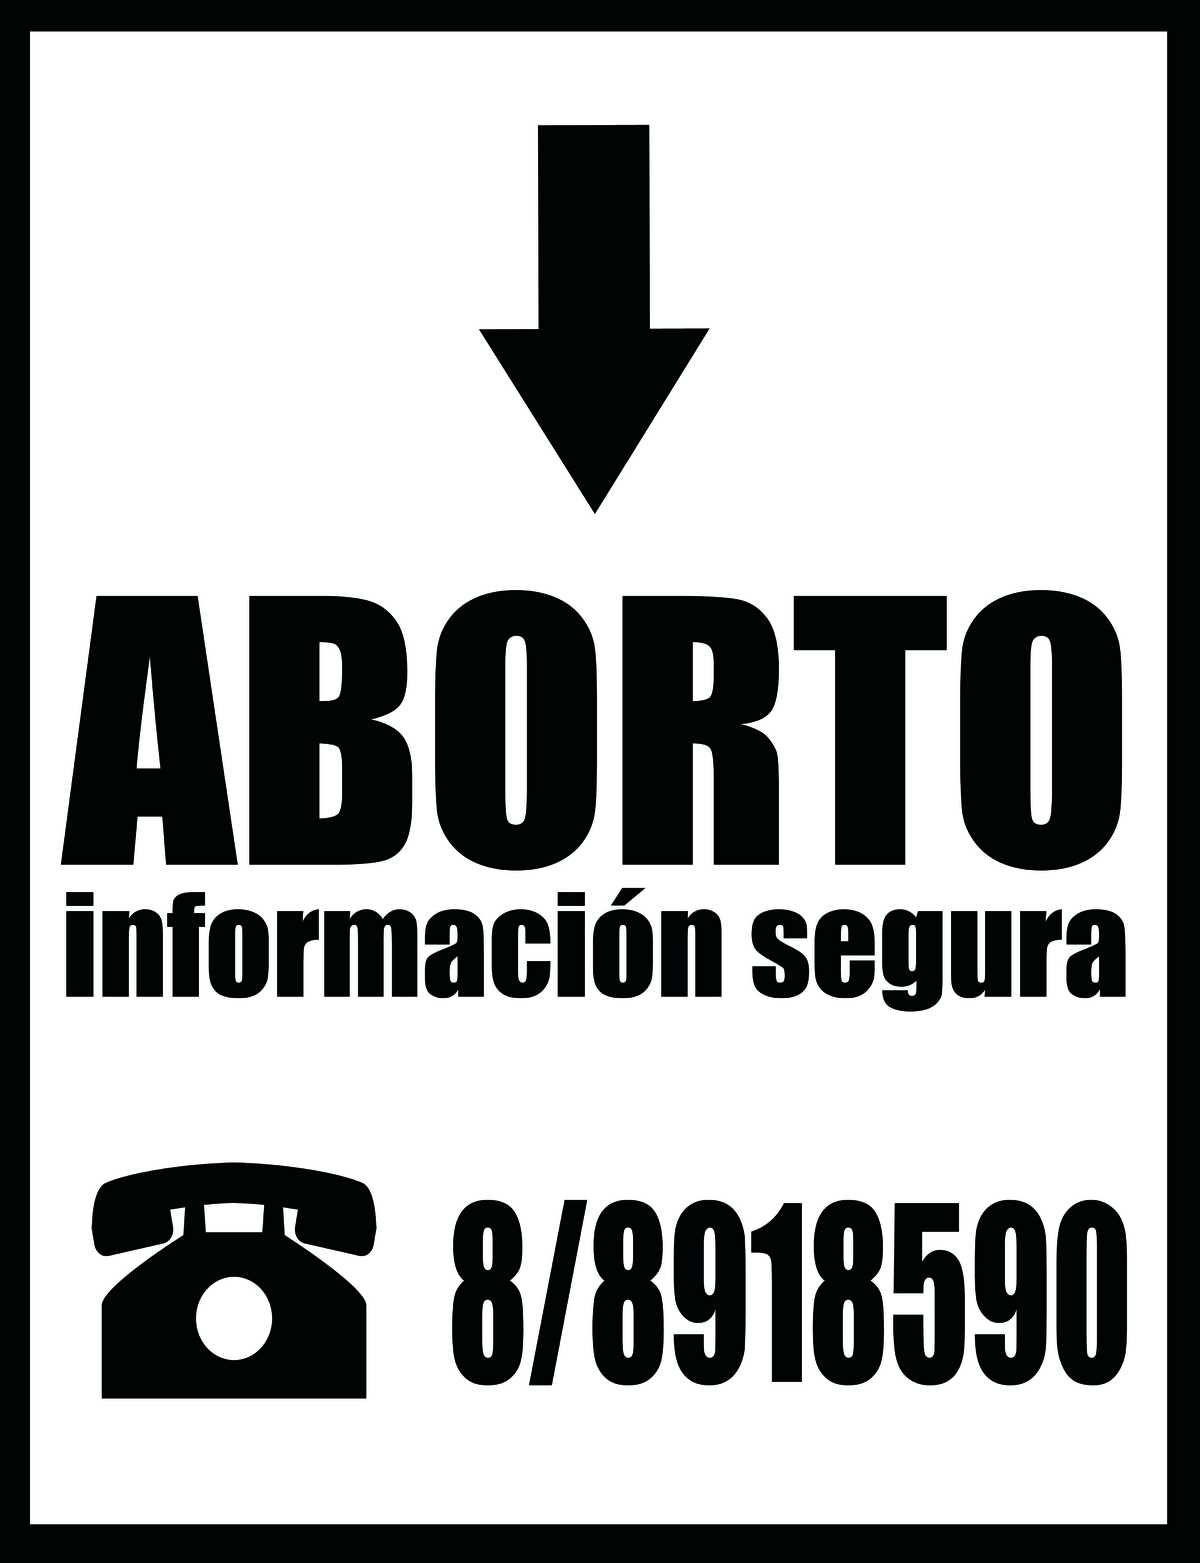 Aborto Segura Chile